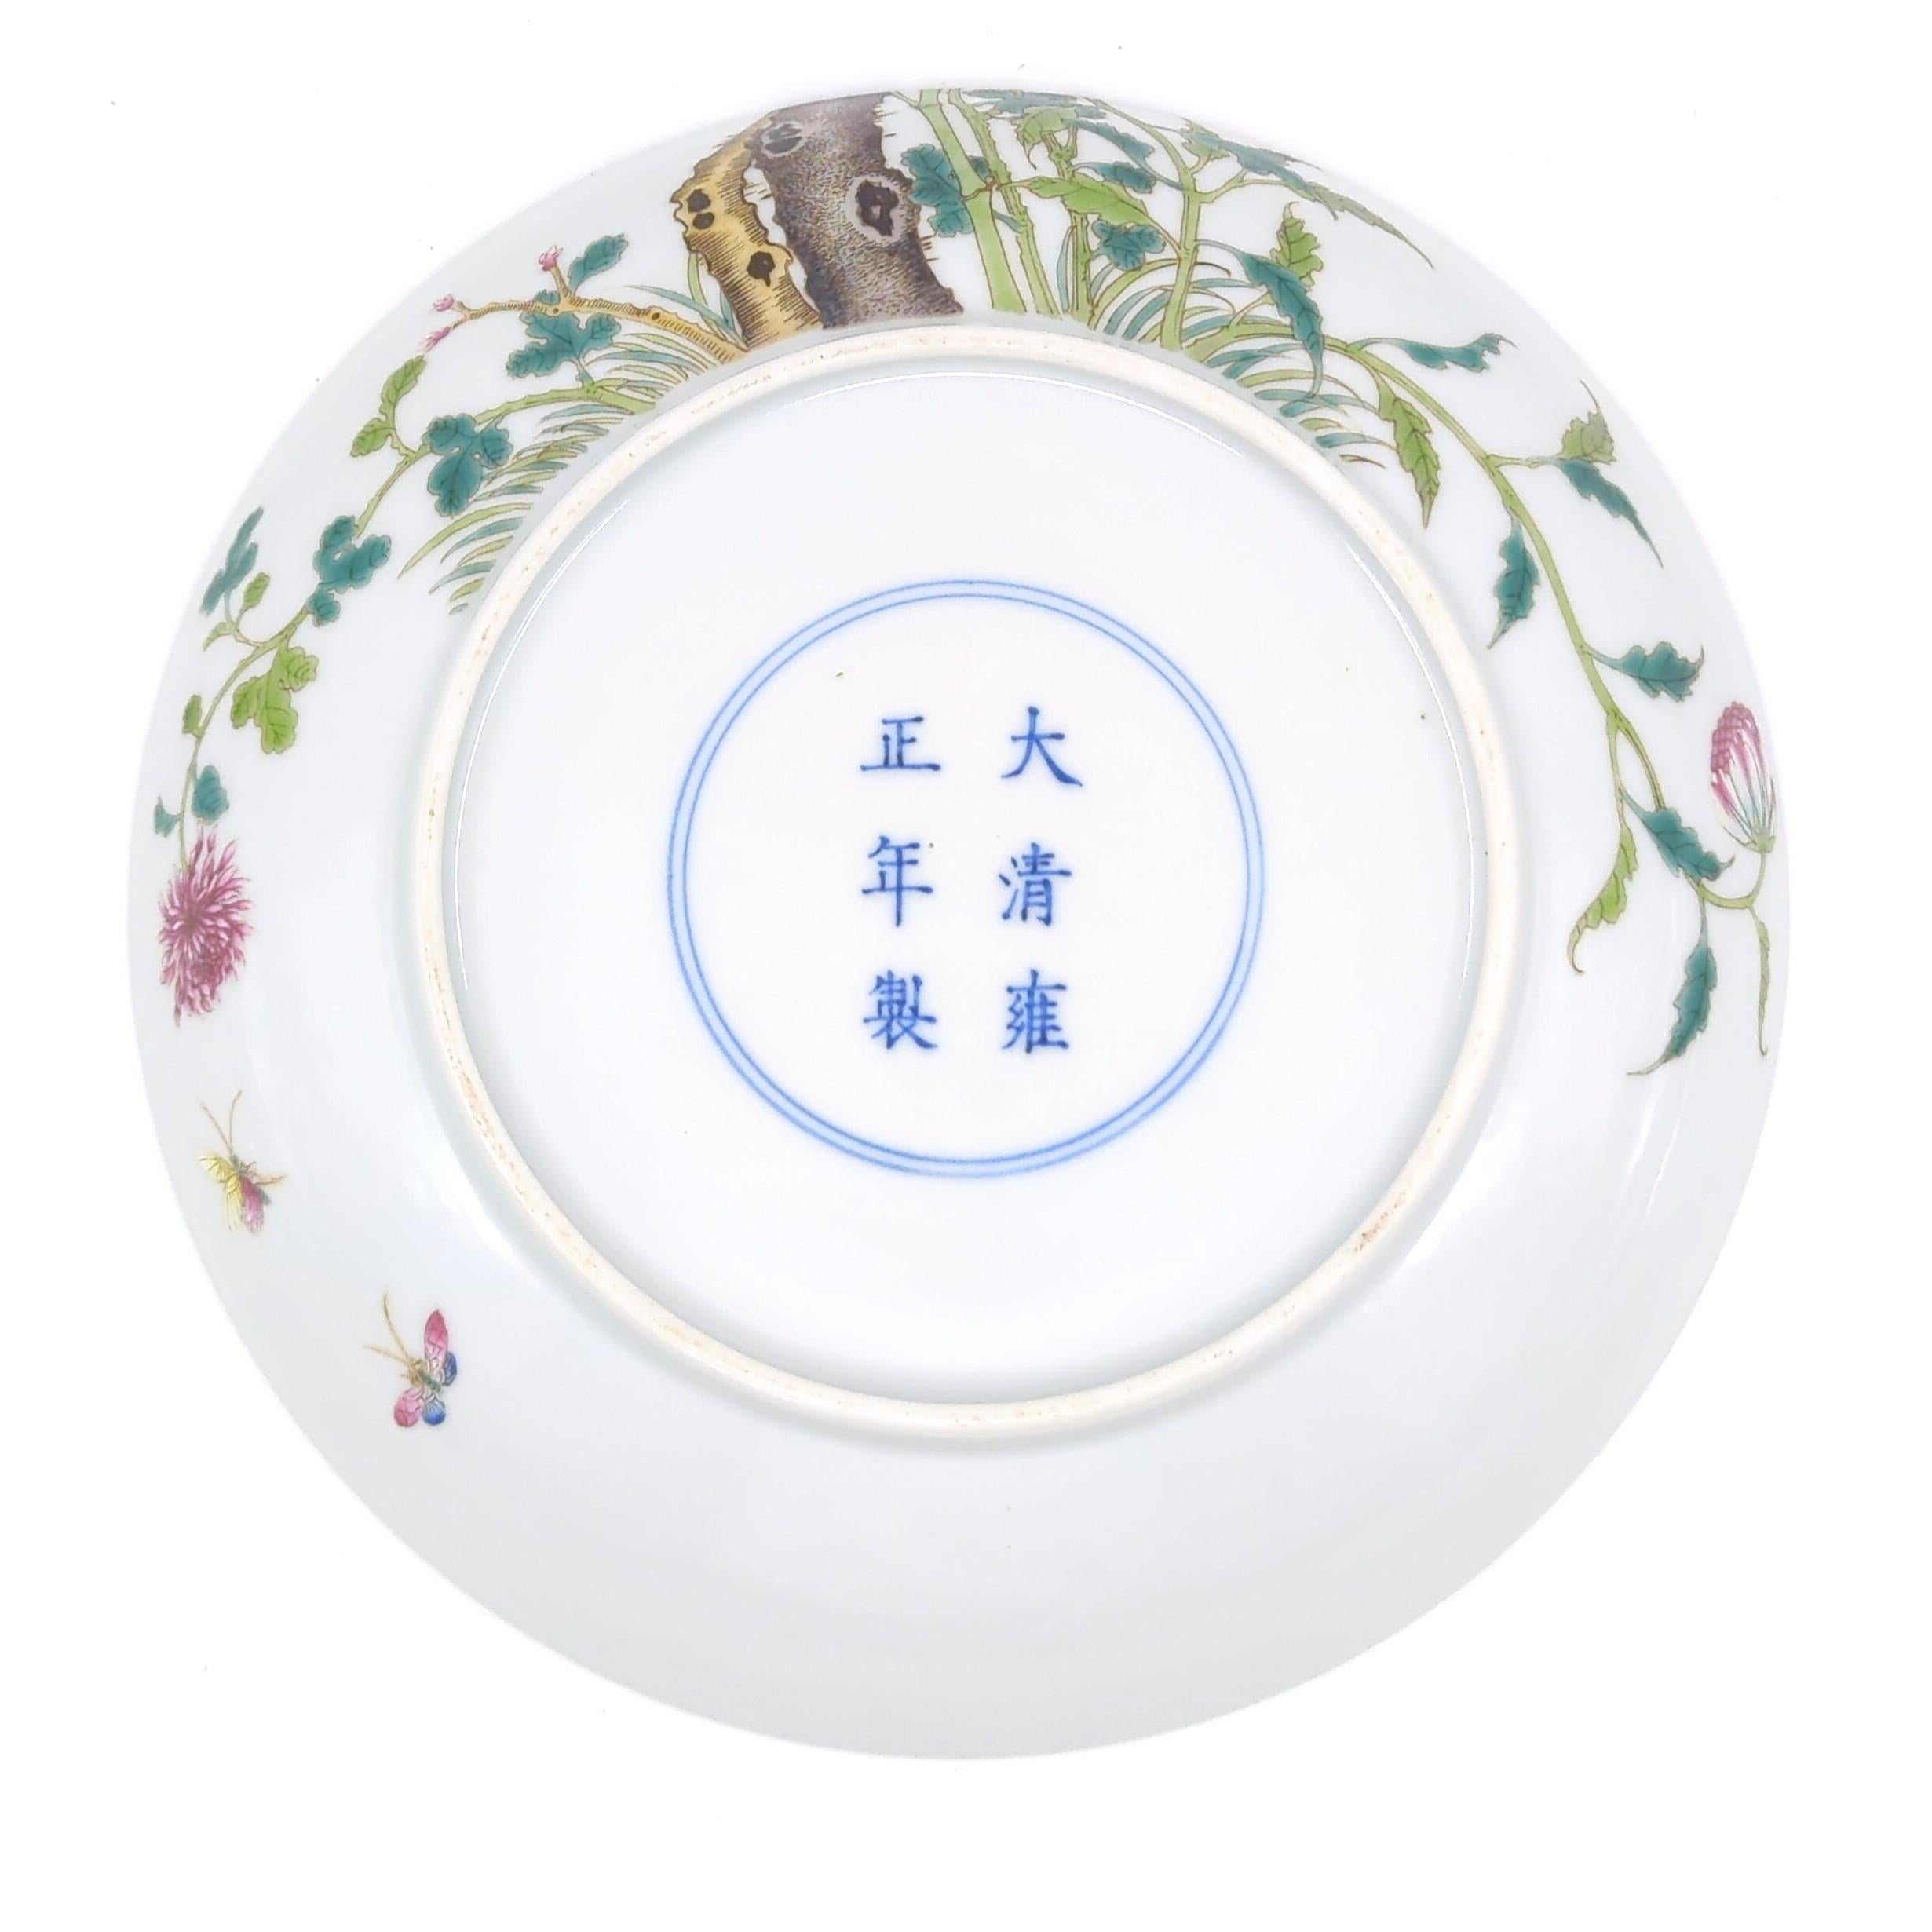 Finest Chinese Porcelain Falangcai Enamel Plate Birds Blossoms Republic ROC 20c  For Sale 3